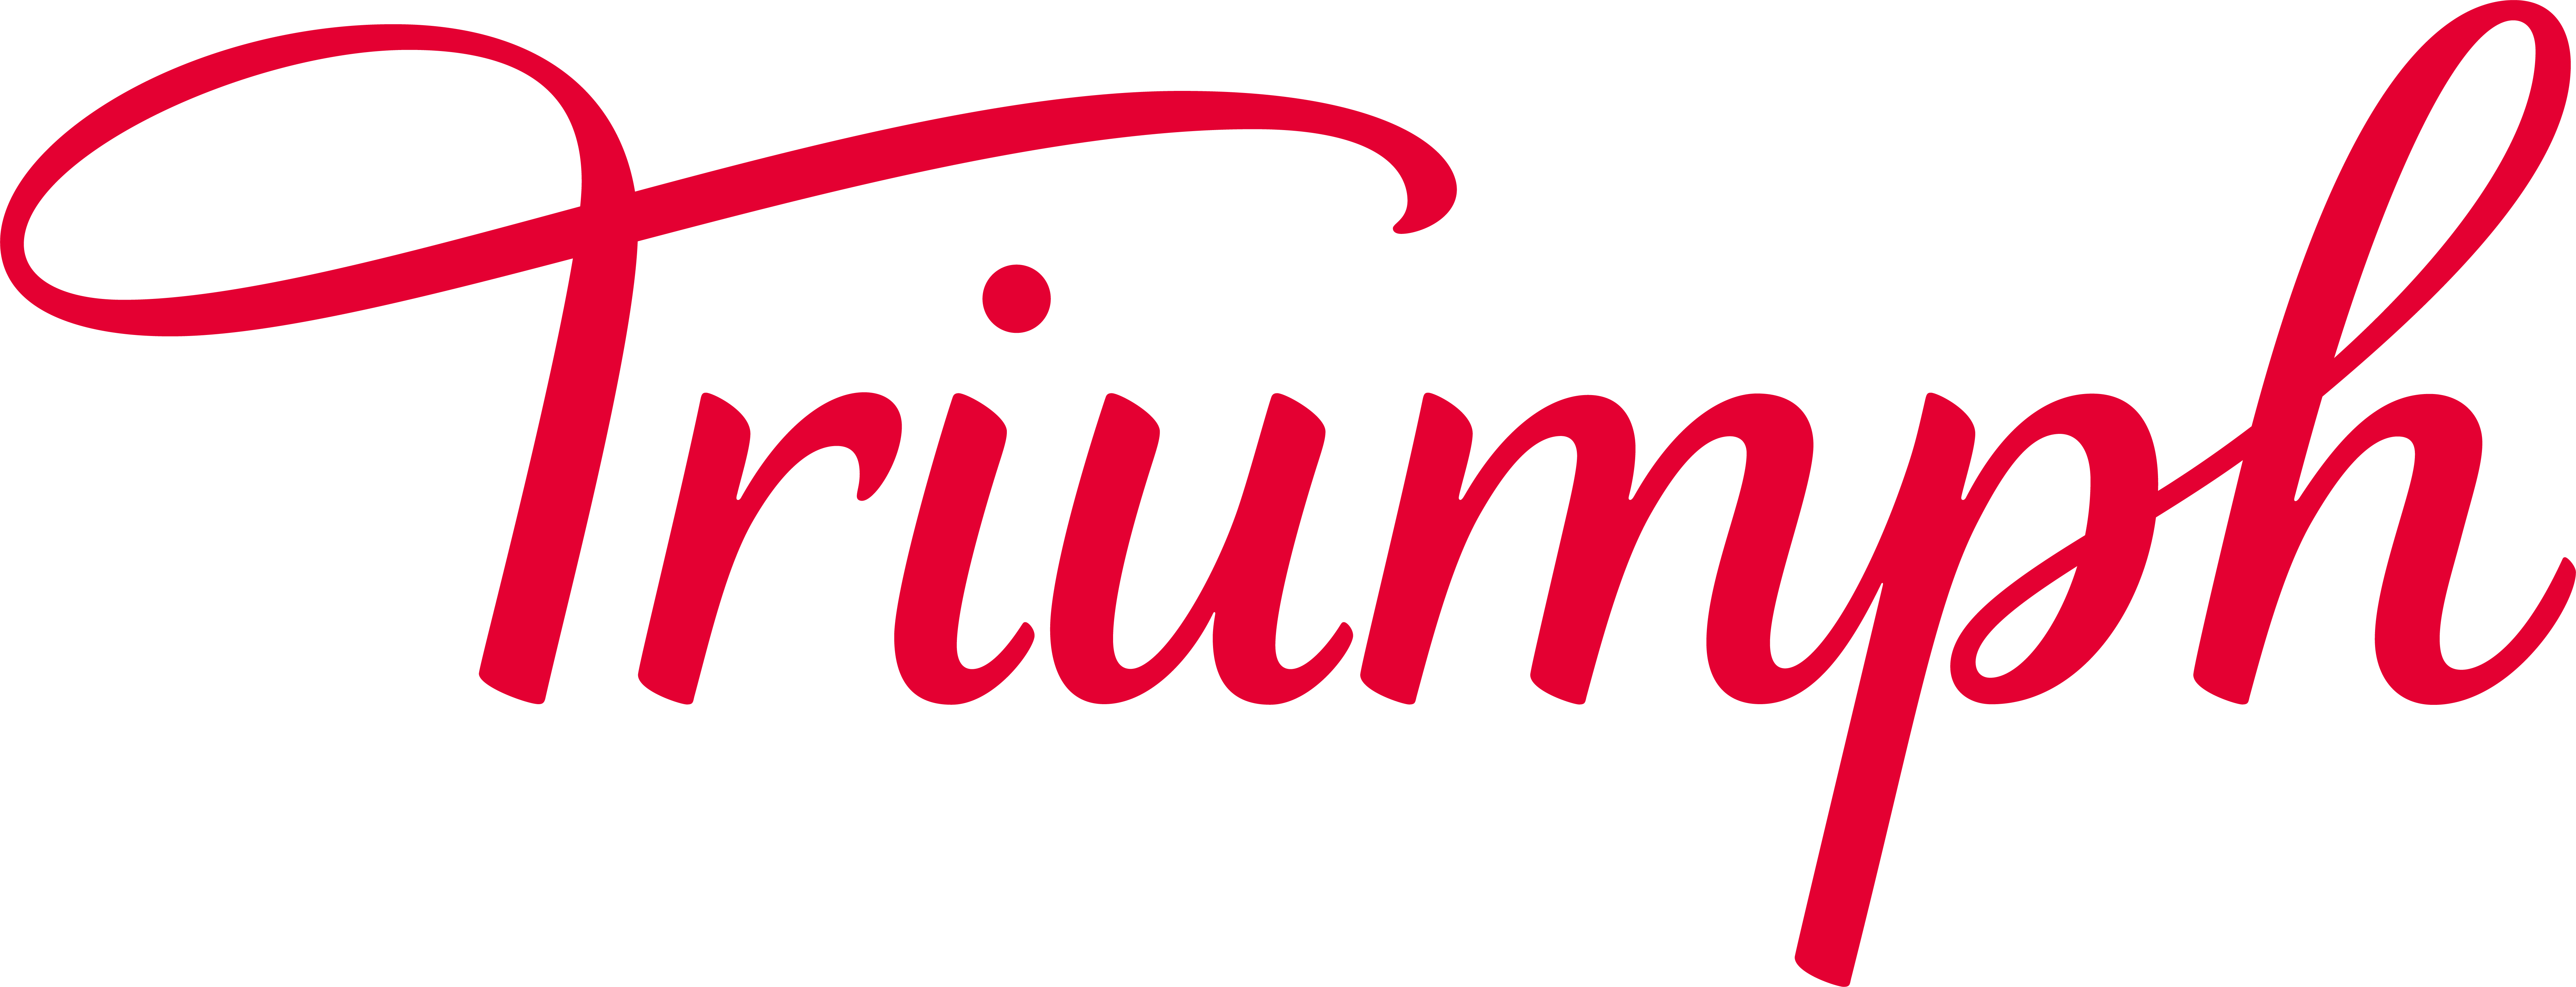 Triumph underwear − women's lingerie, shapewear & more